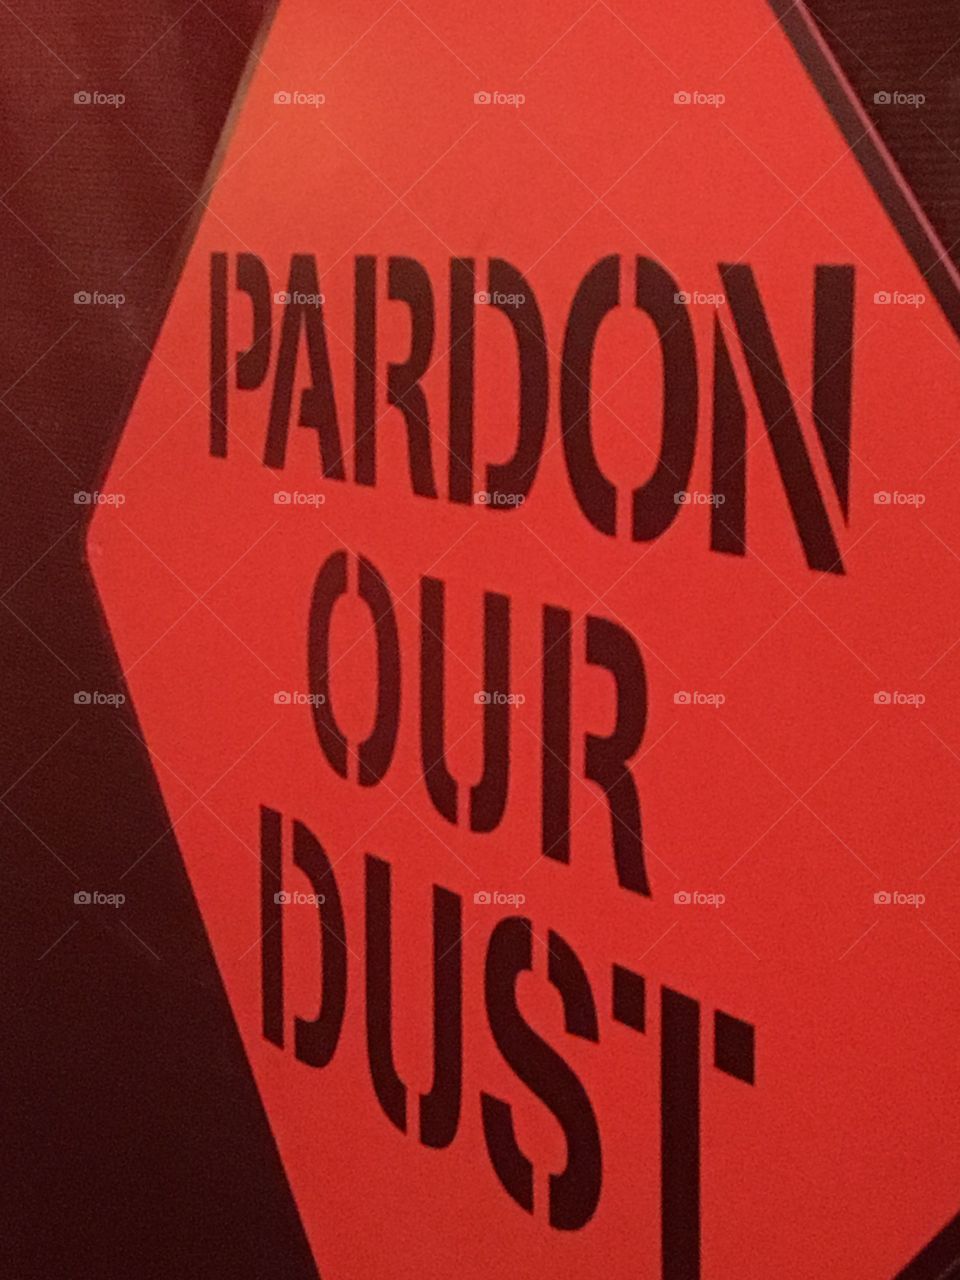 Pardon our dust 